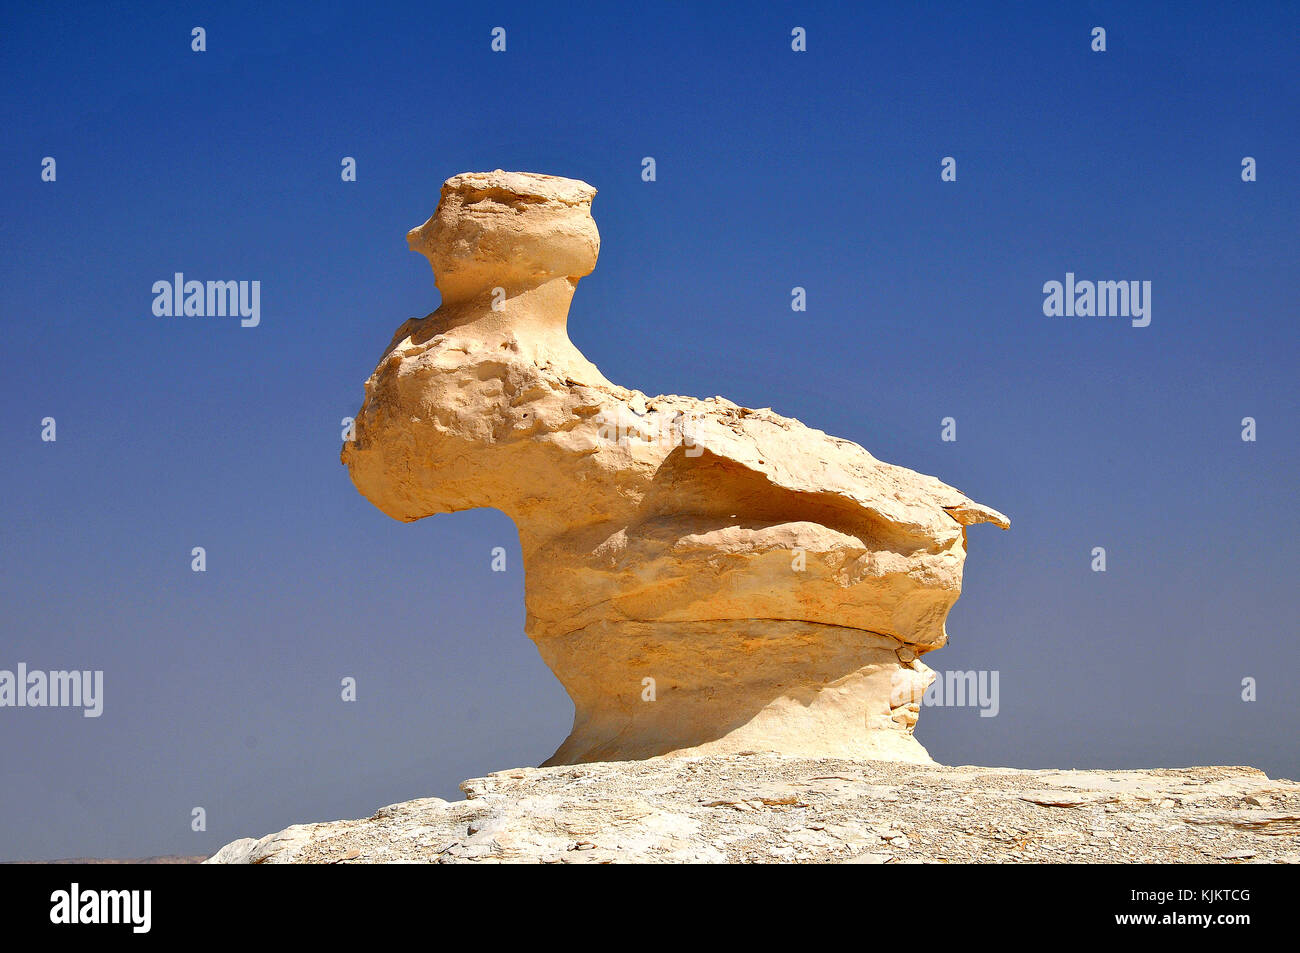 Le désert blanc, province Assiout. L'Égypte. Banque D'Images